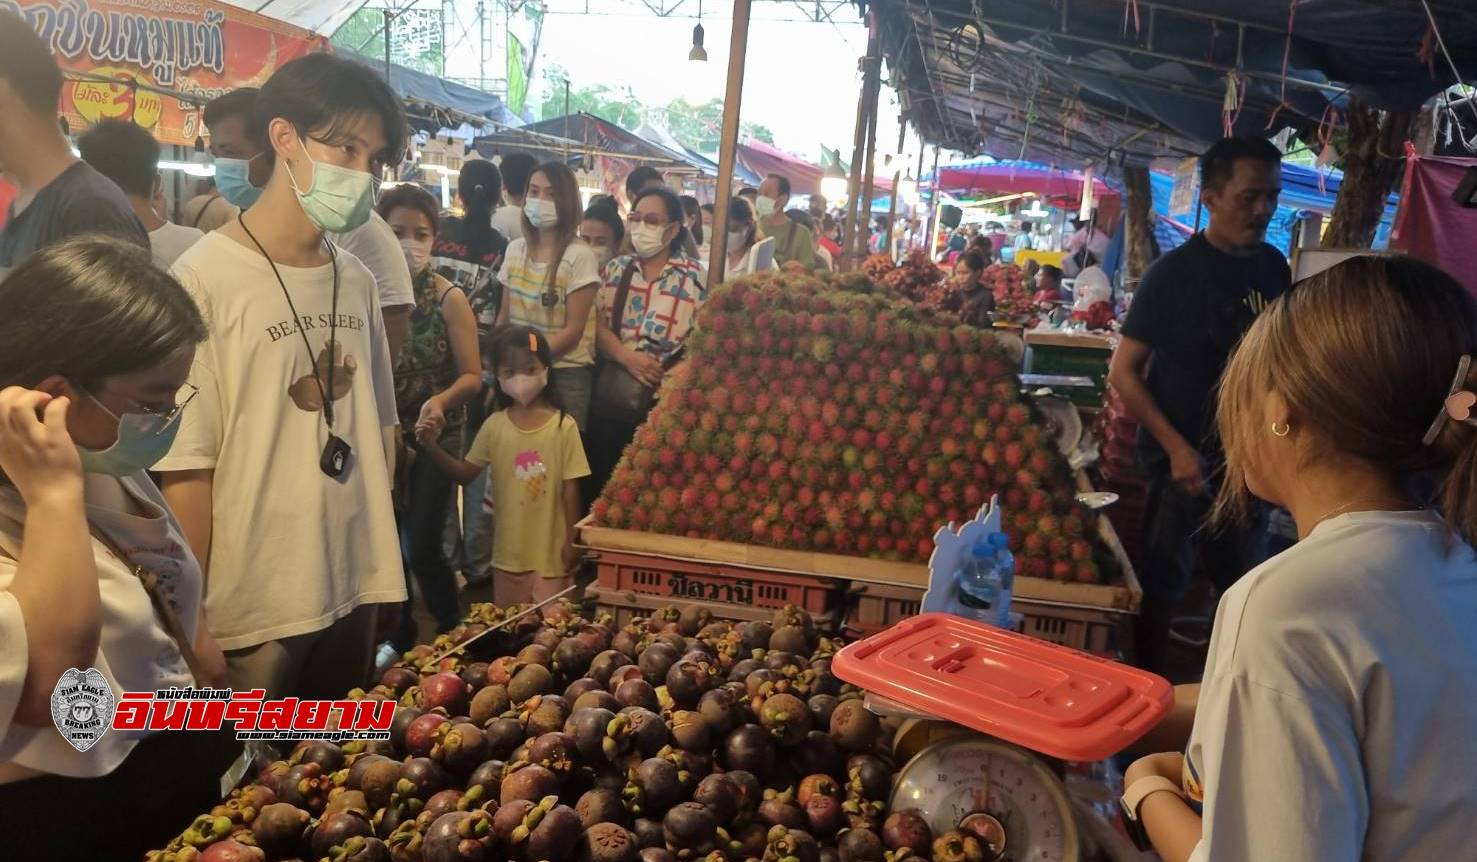 ปราจีนบุรี-เปิดงานวันเกษตรกรหรืองานชาวสวนปราจีนฯ คนนับ 1,000 แห่ชิม-ช็อปแน่นเย็นจรดดึก